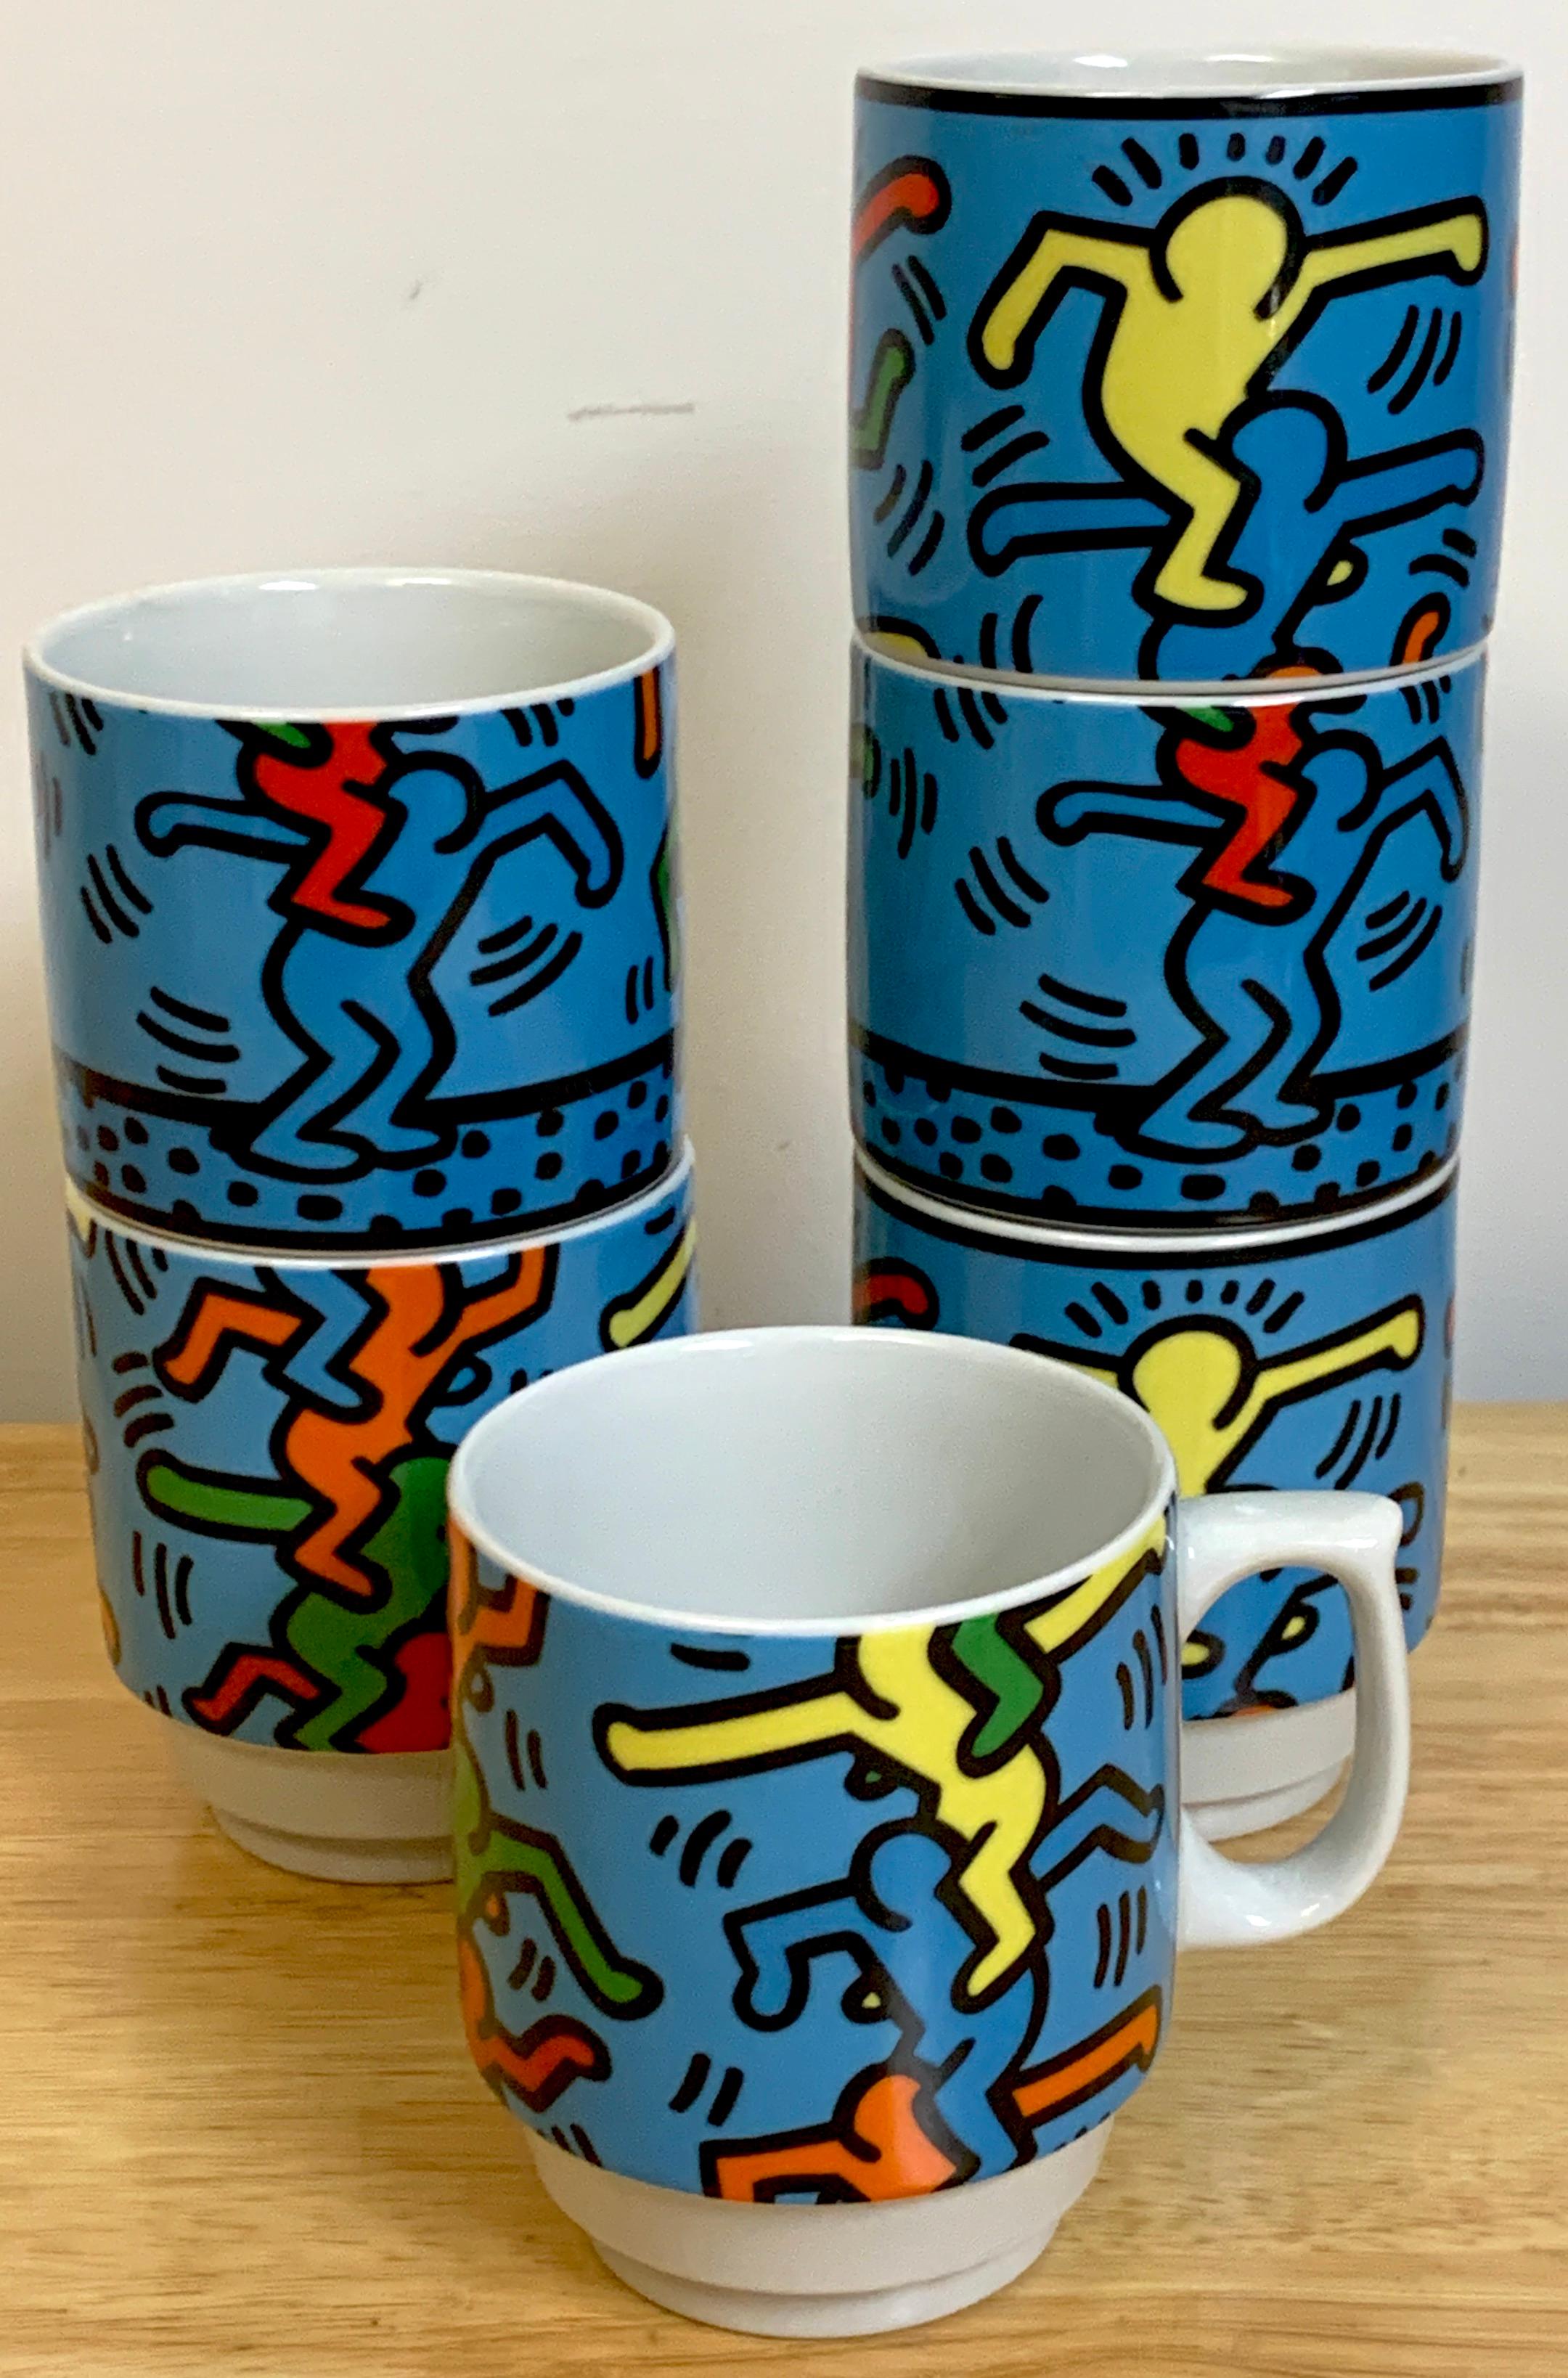 Six tasses de Keith Haring pour Konitz
les hommes empilés 
Fabriqué en Allemagne
1990s.